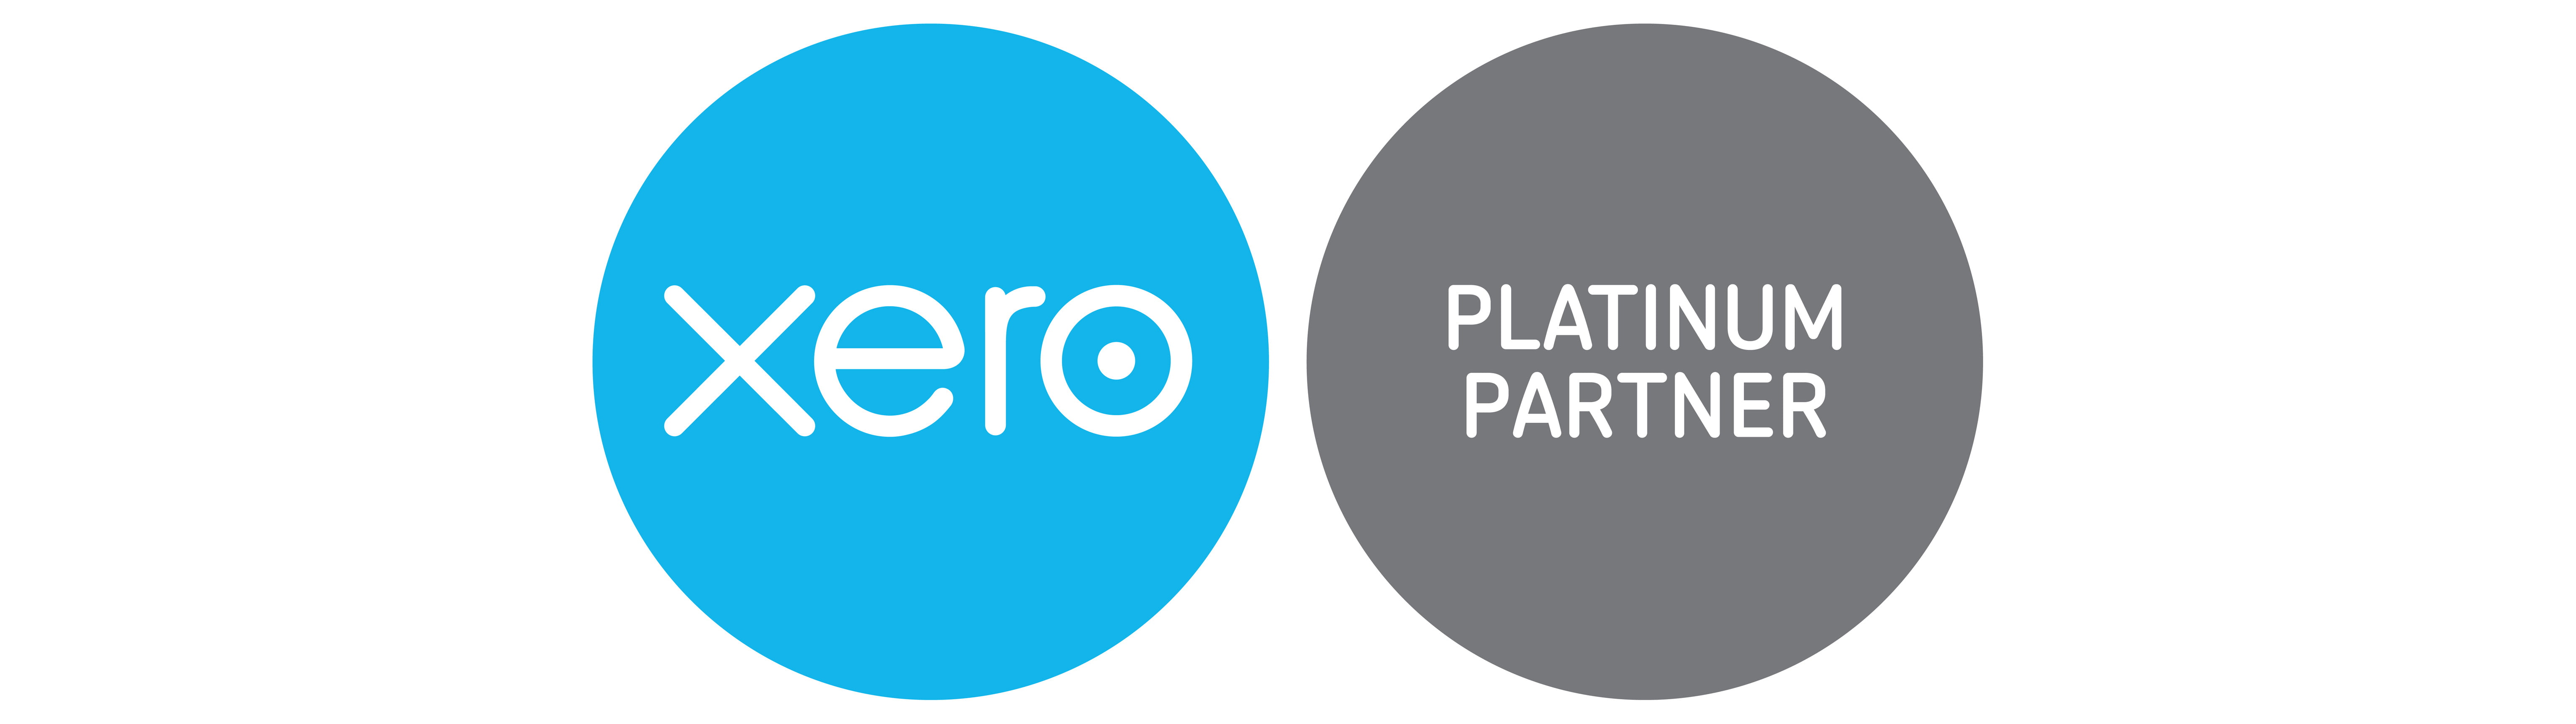 xero platinum partner badge RGB